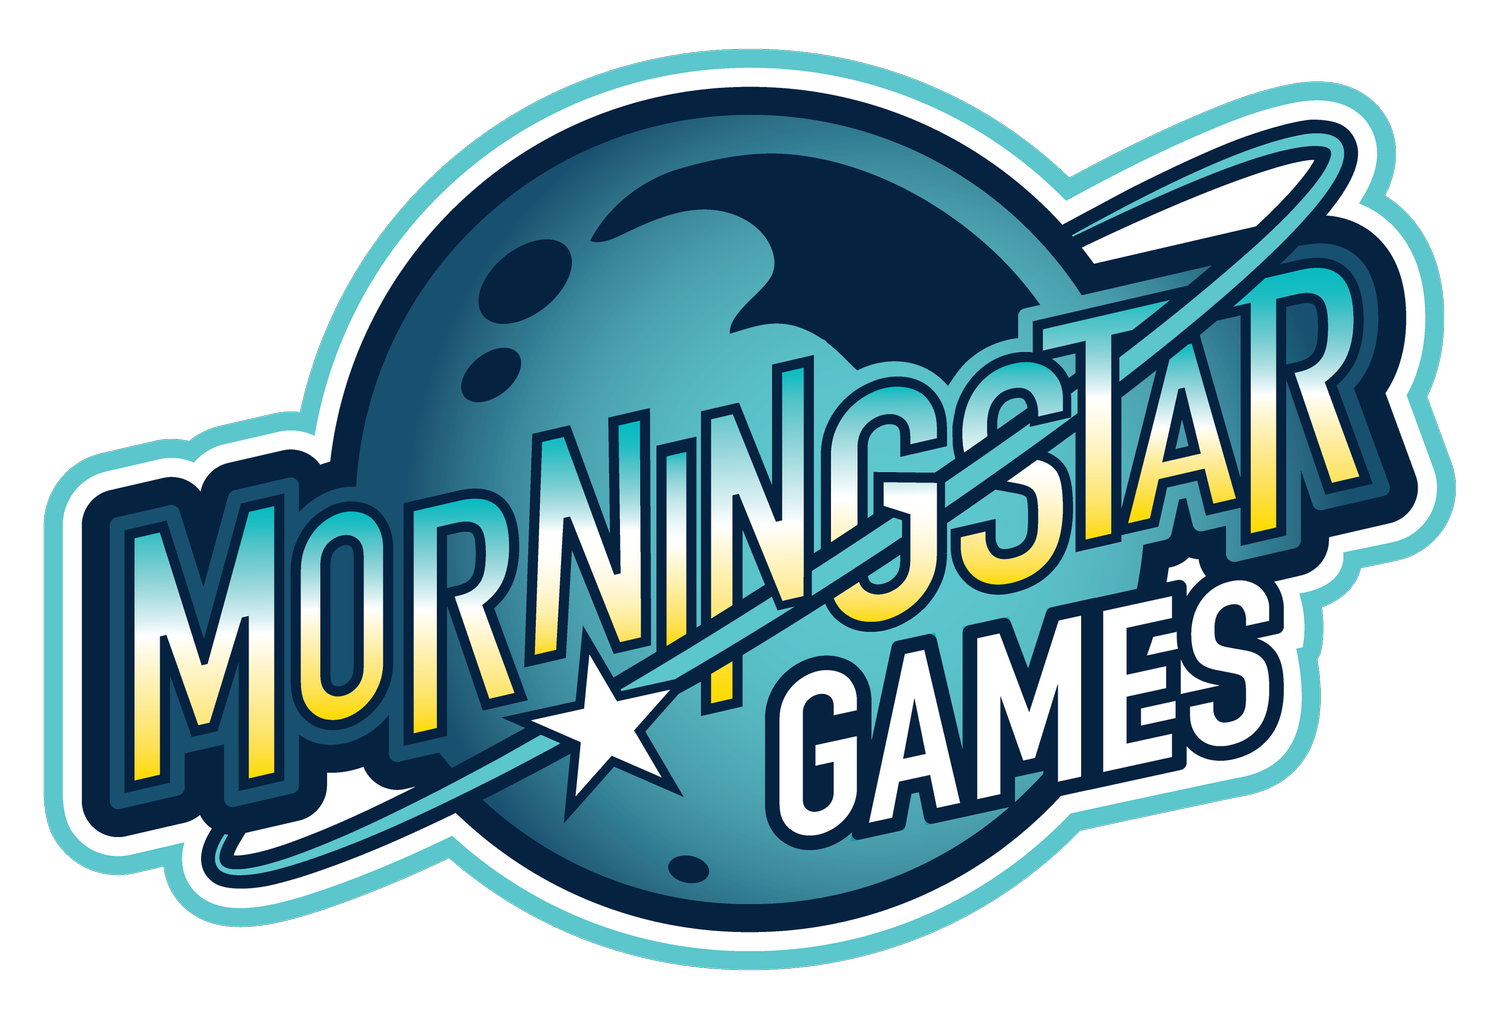 MORNINGSTAR GAMES